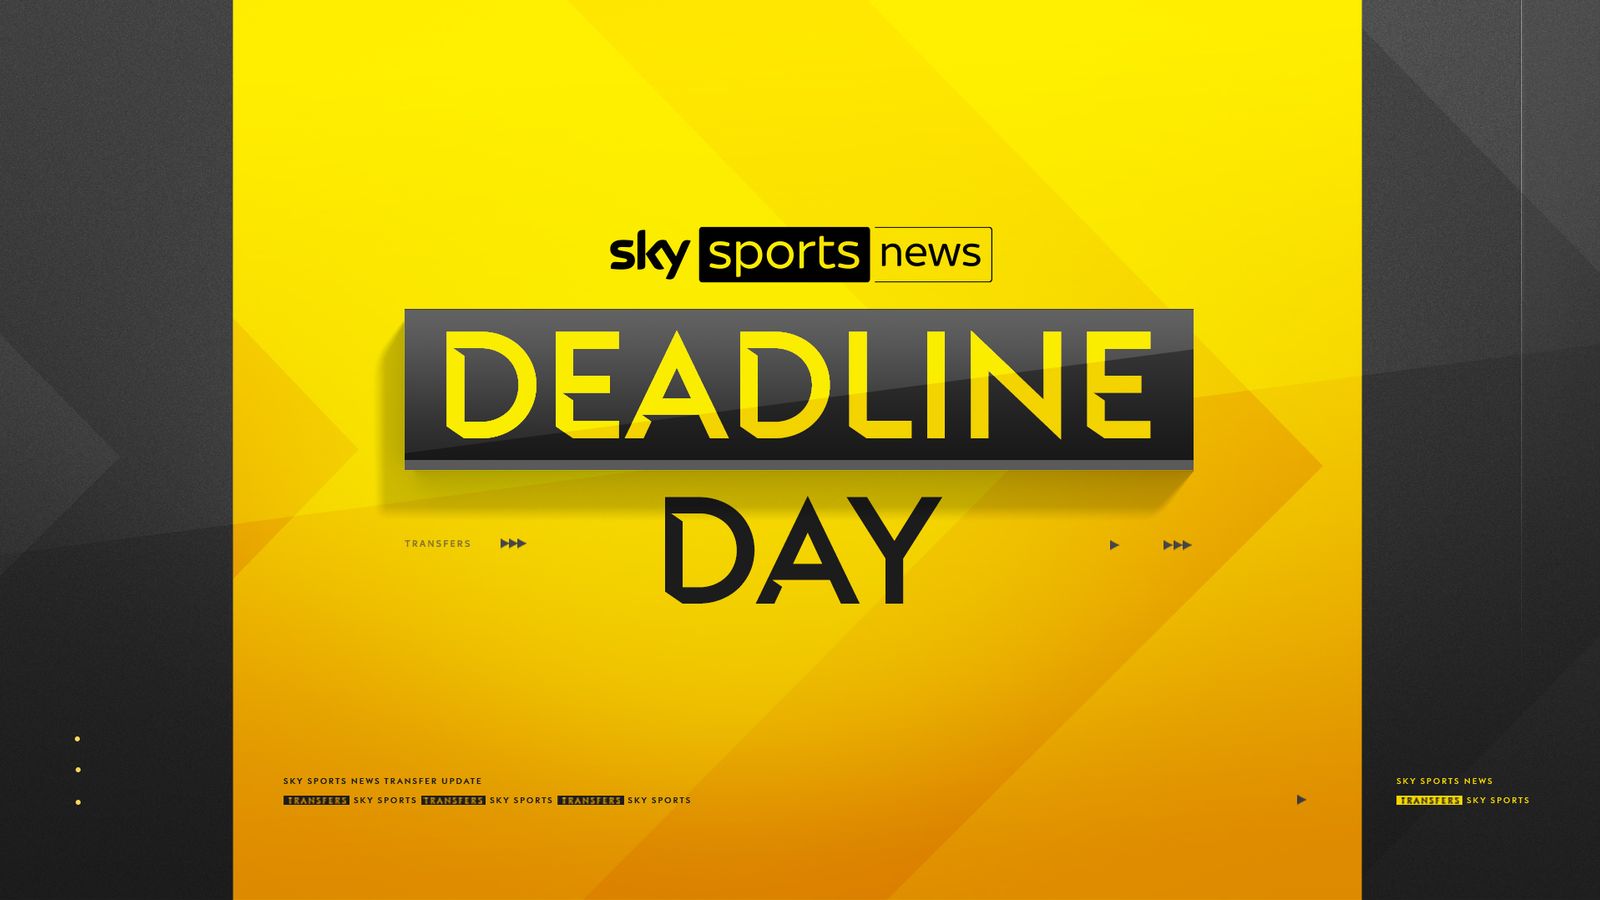 Sky Sports Deadline Day Sky Sports News